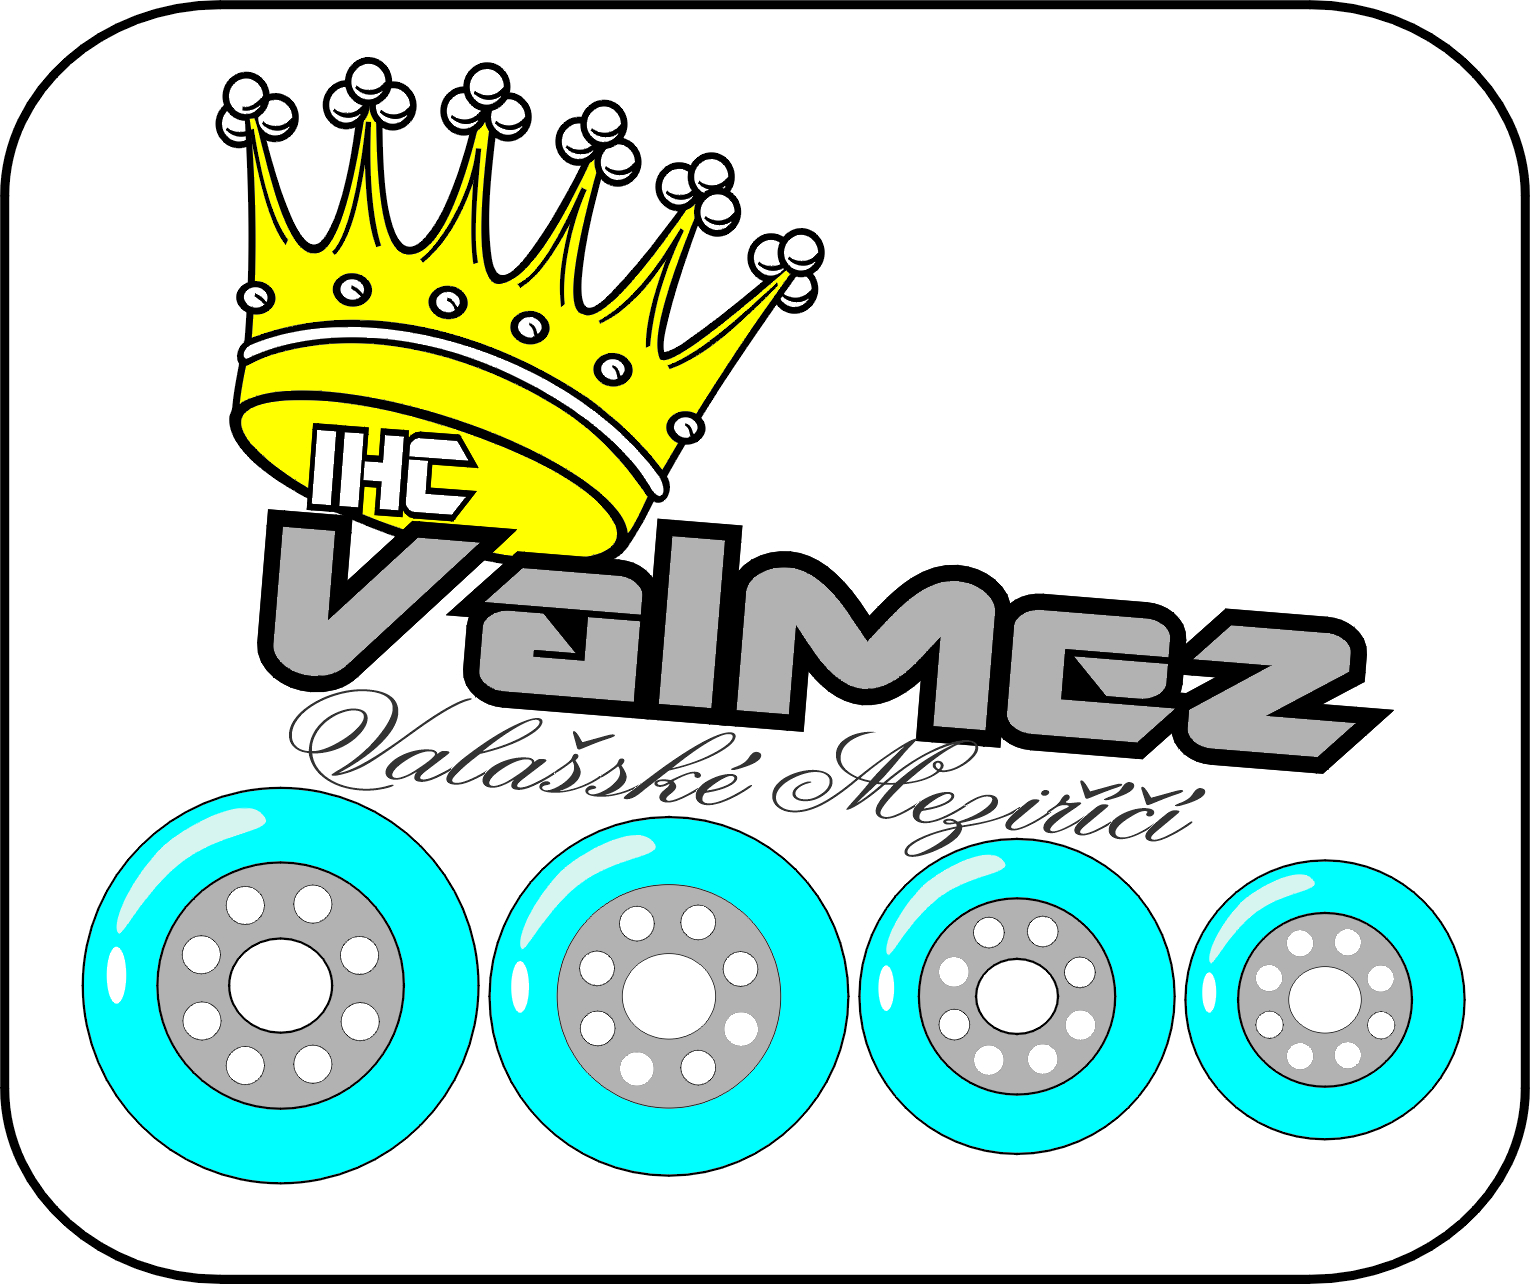 IHC ValMez - logo 2